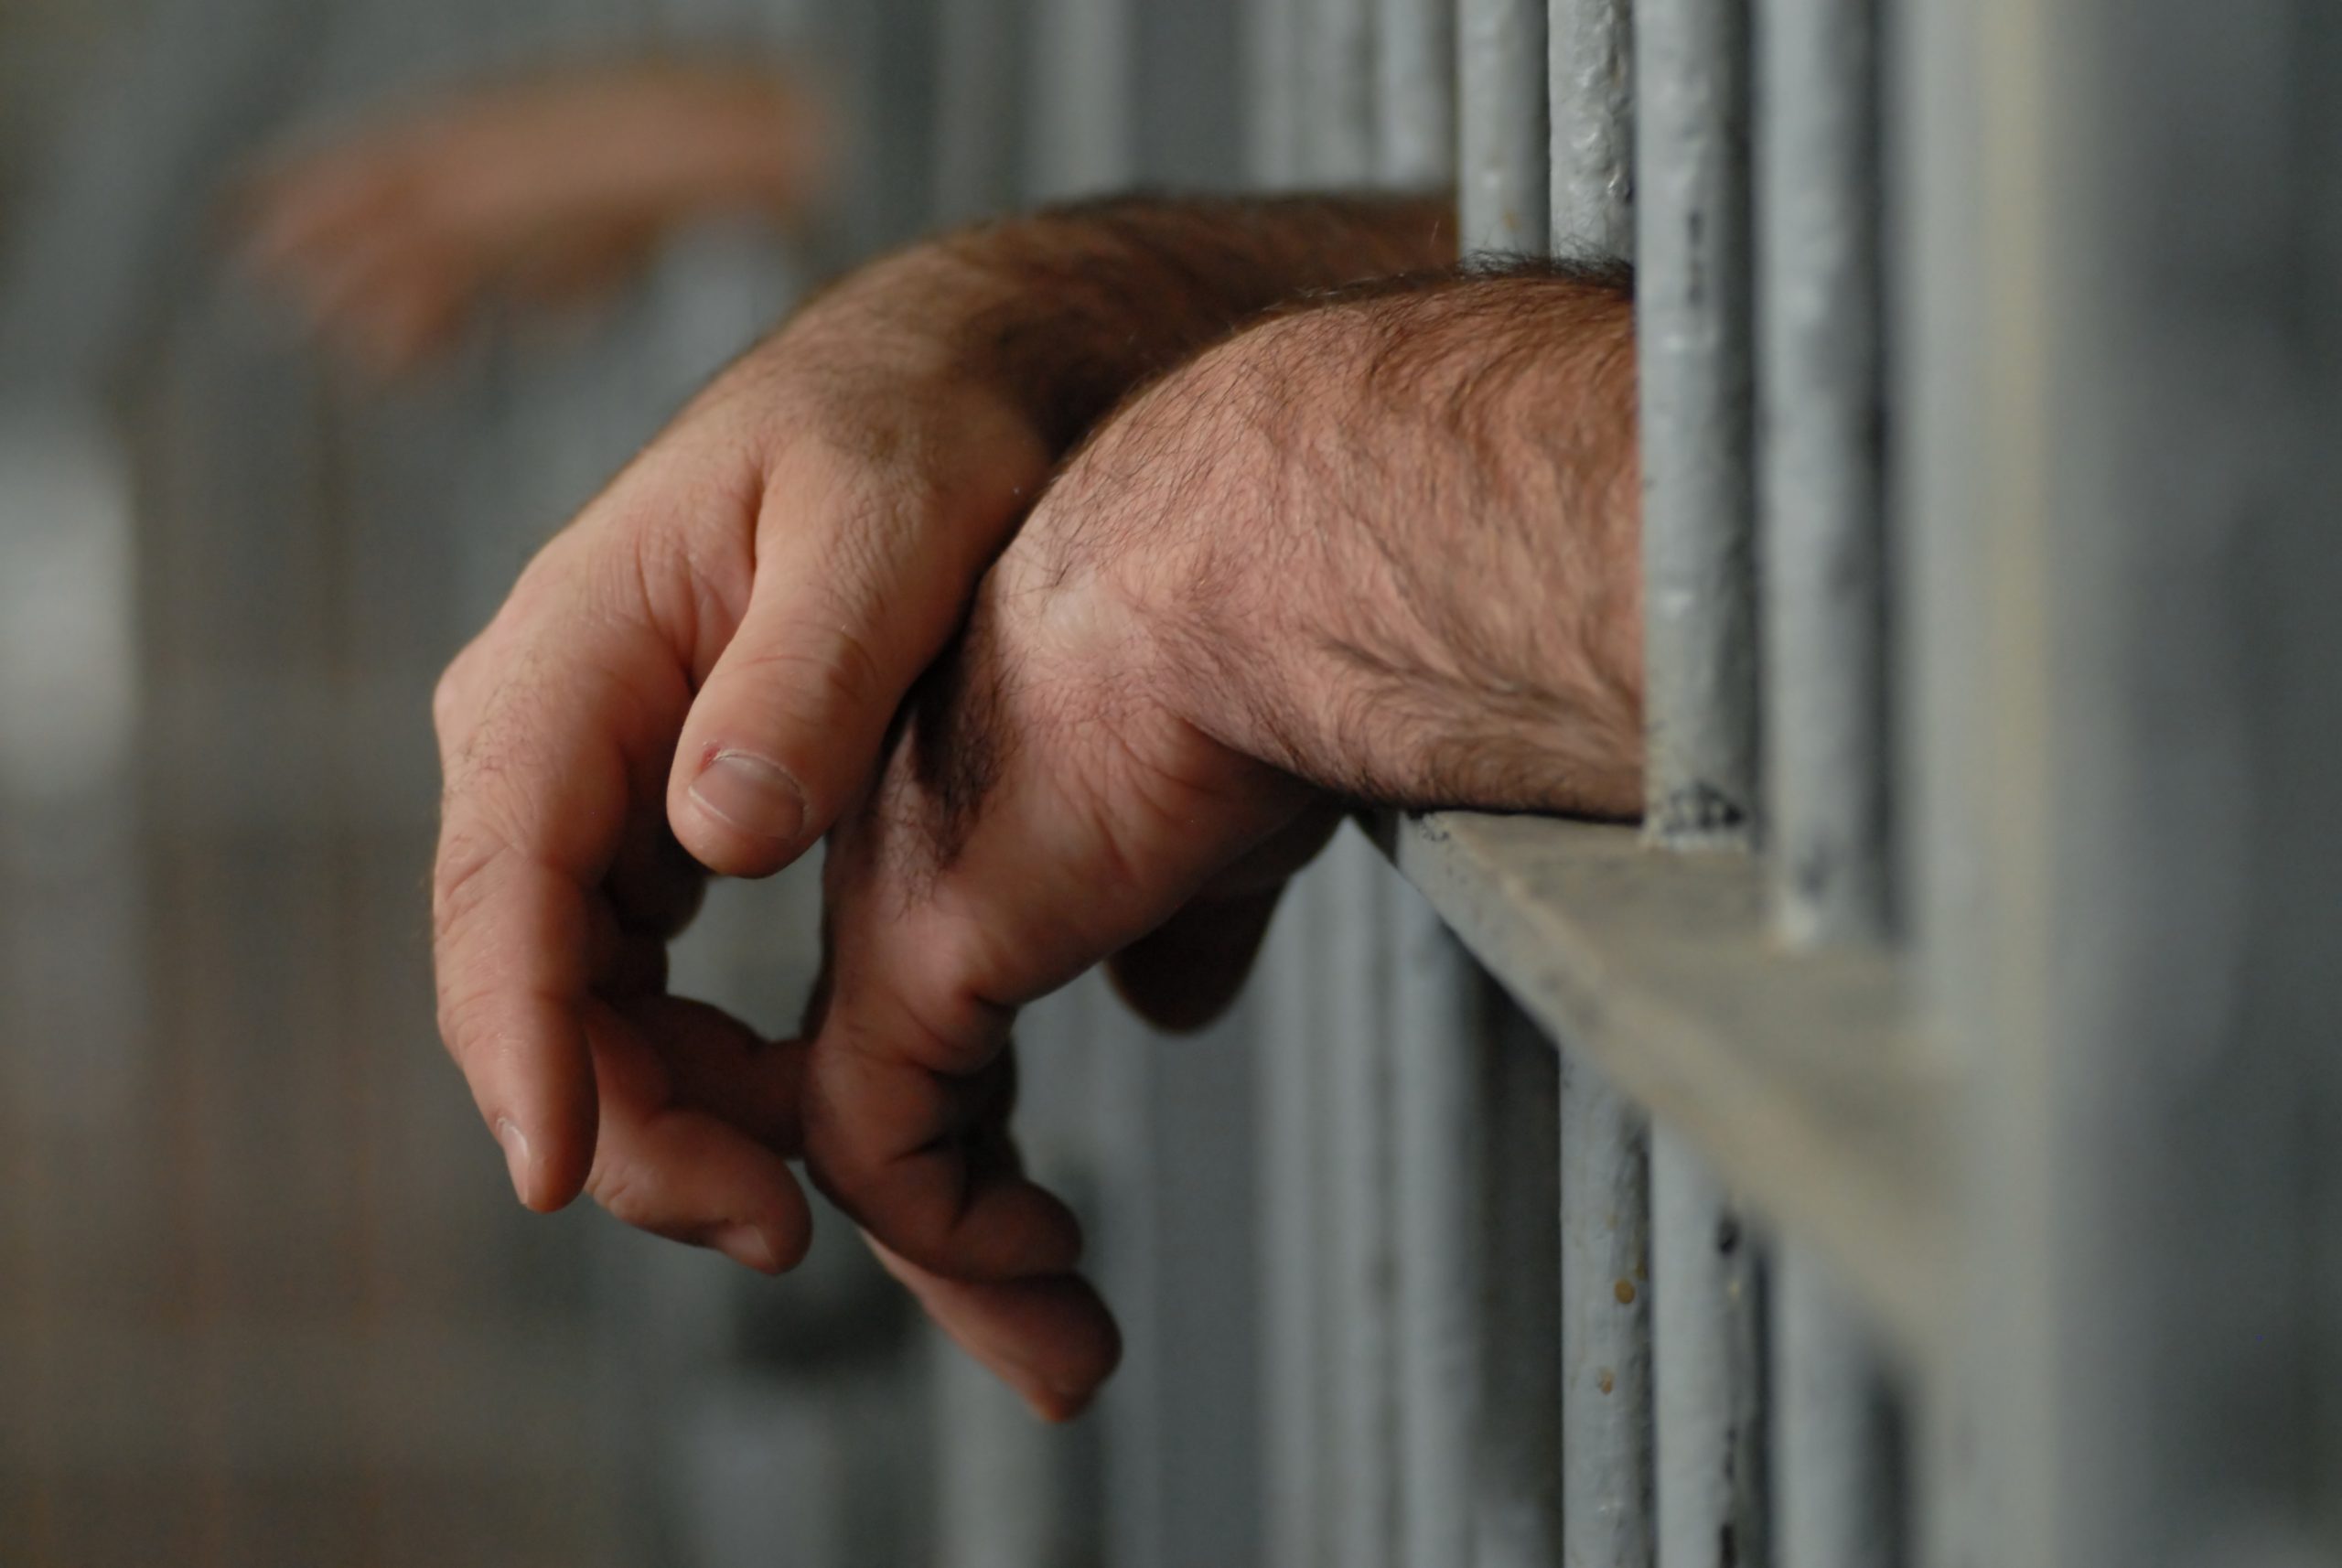 Homem condenado a 4 anos de prisão por coagir sexualmente jovem